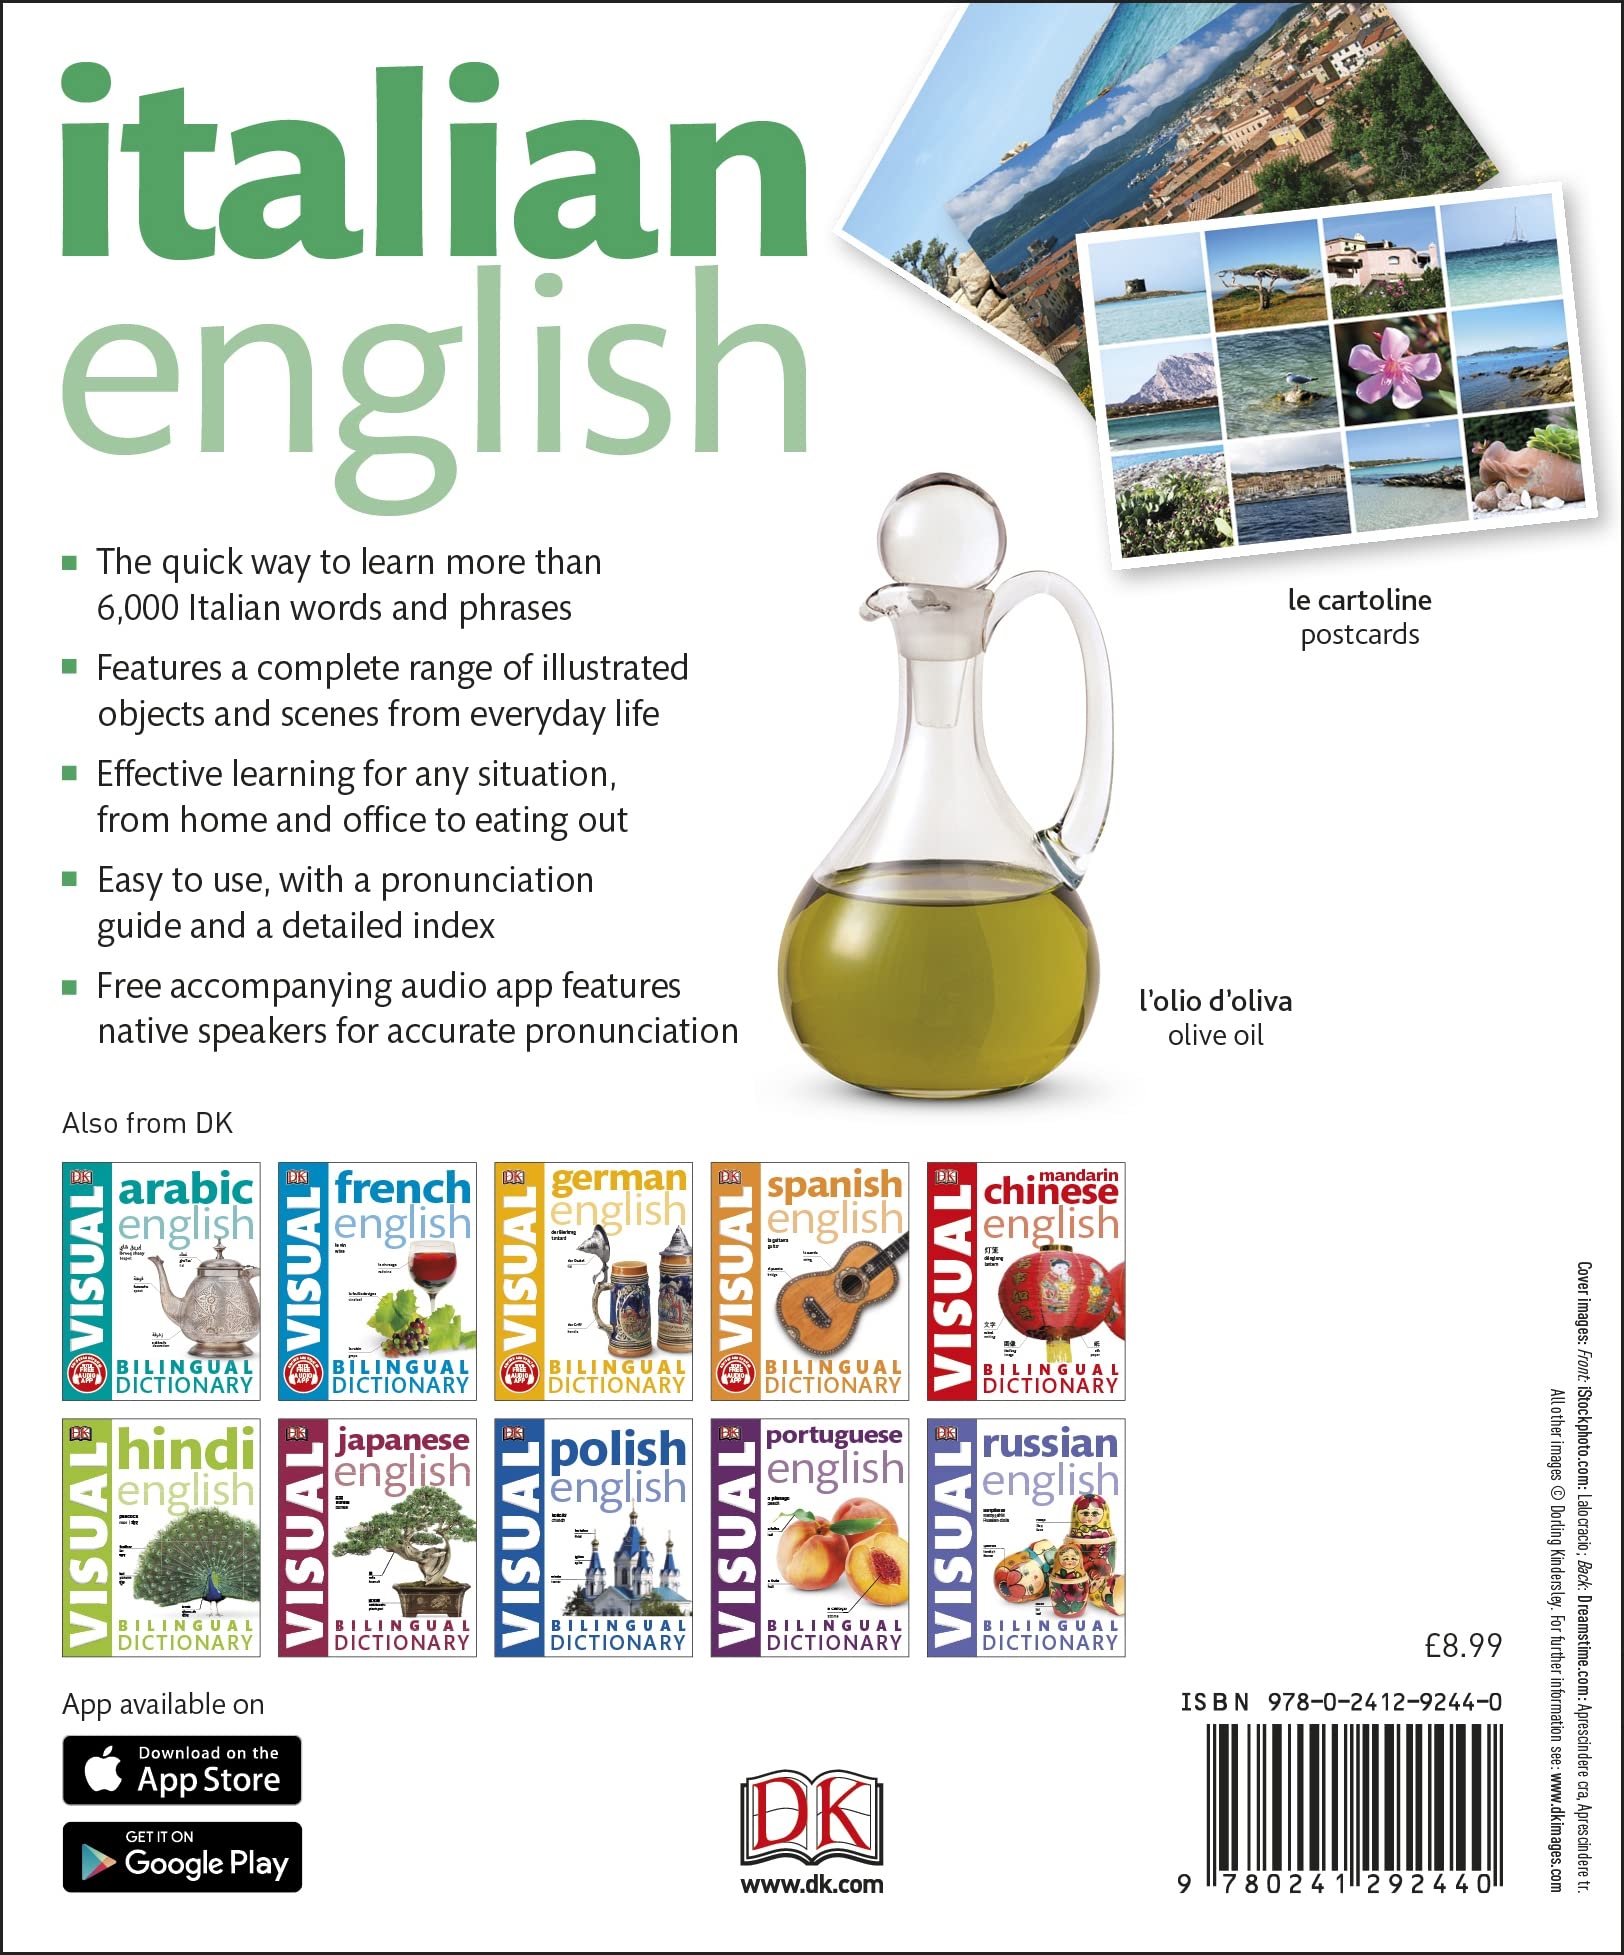 Italian English Bilingual Visual Dictionary (DK Bilingual Visual Dictionaries)